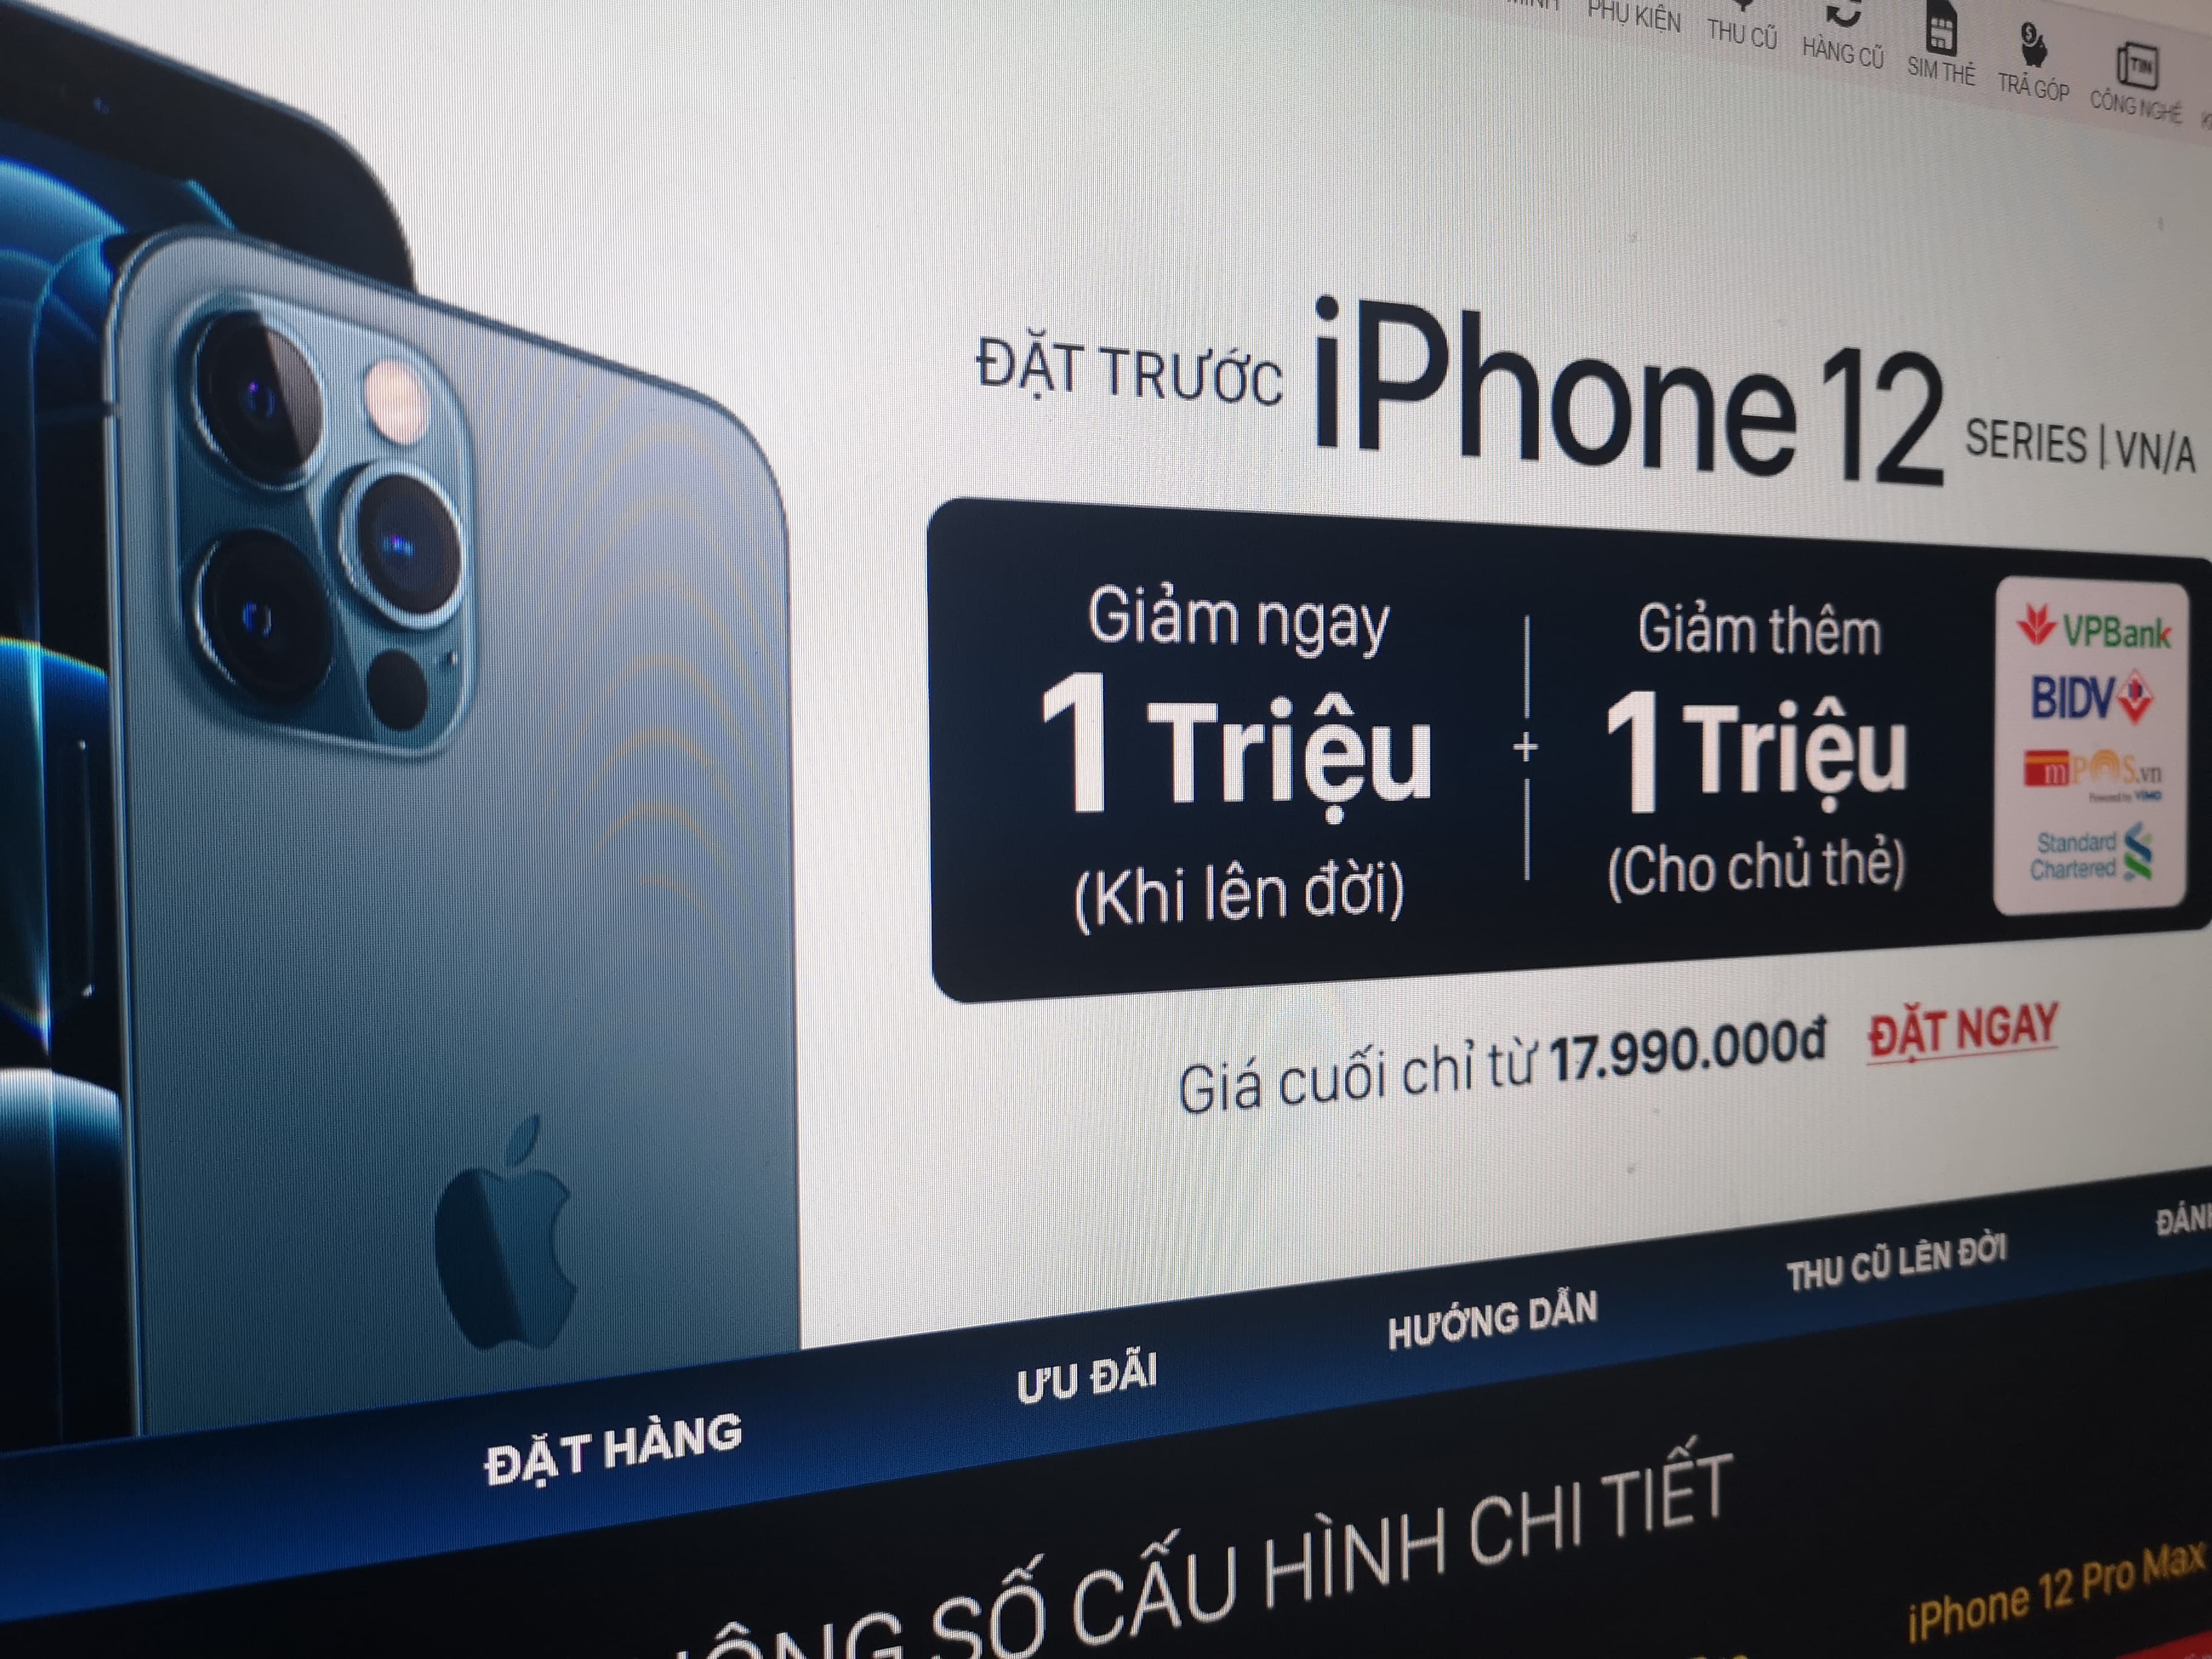 Đại lý giảm giá, tung nhiều ưu đãi trước khi mở bán iPhone 12 tại Việt Nam